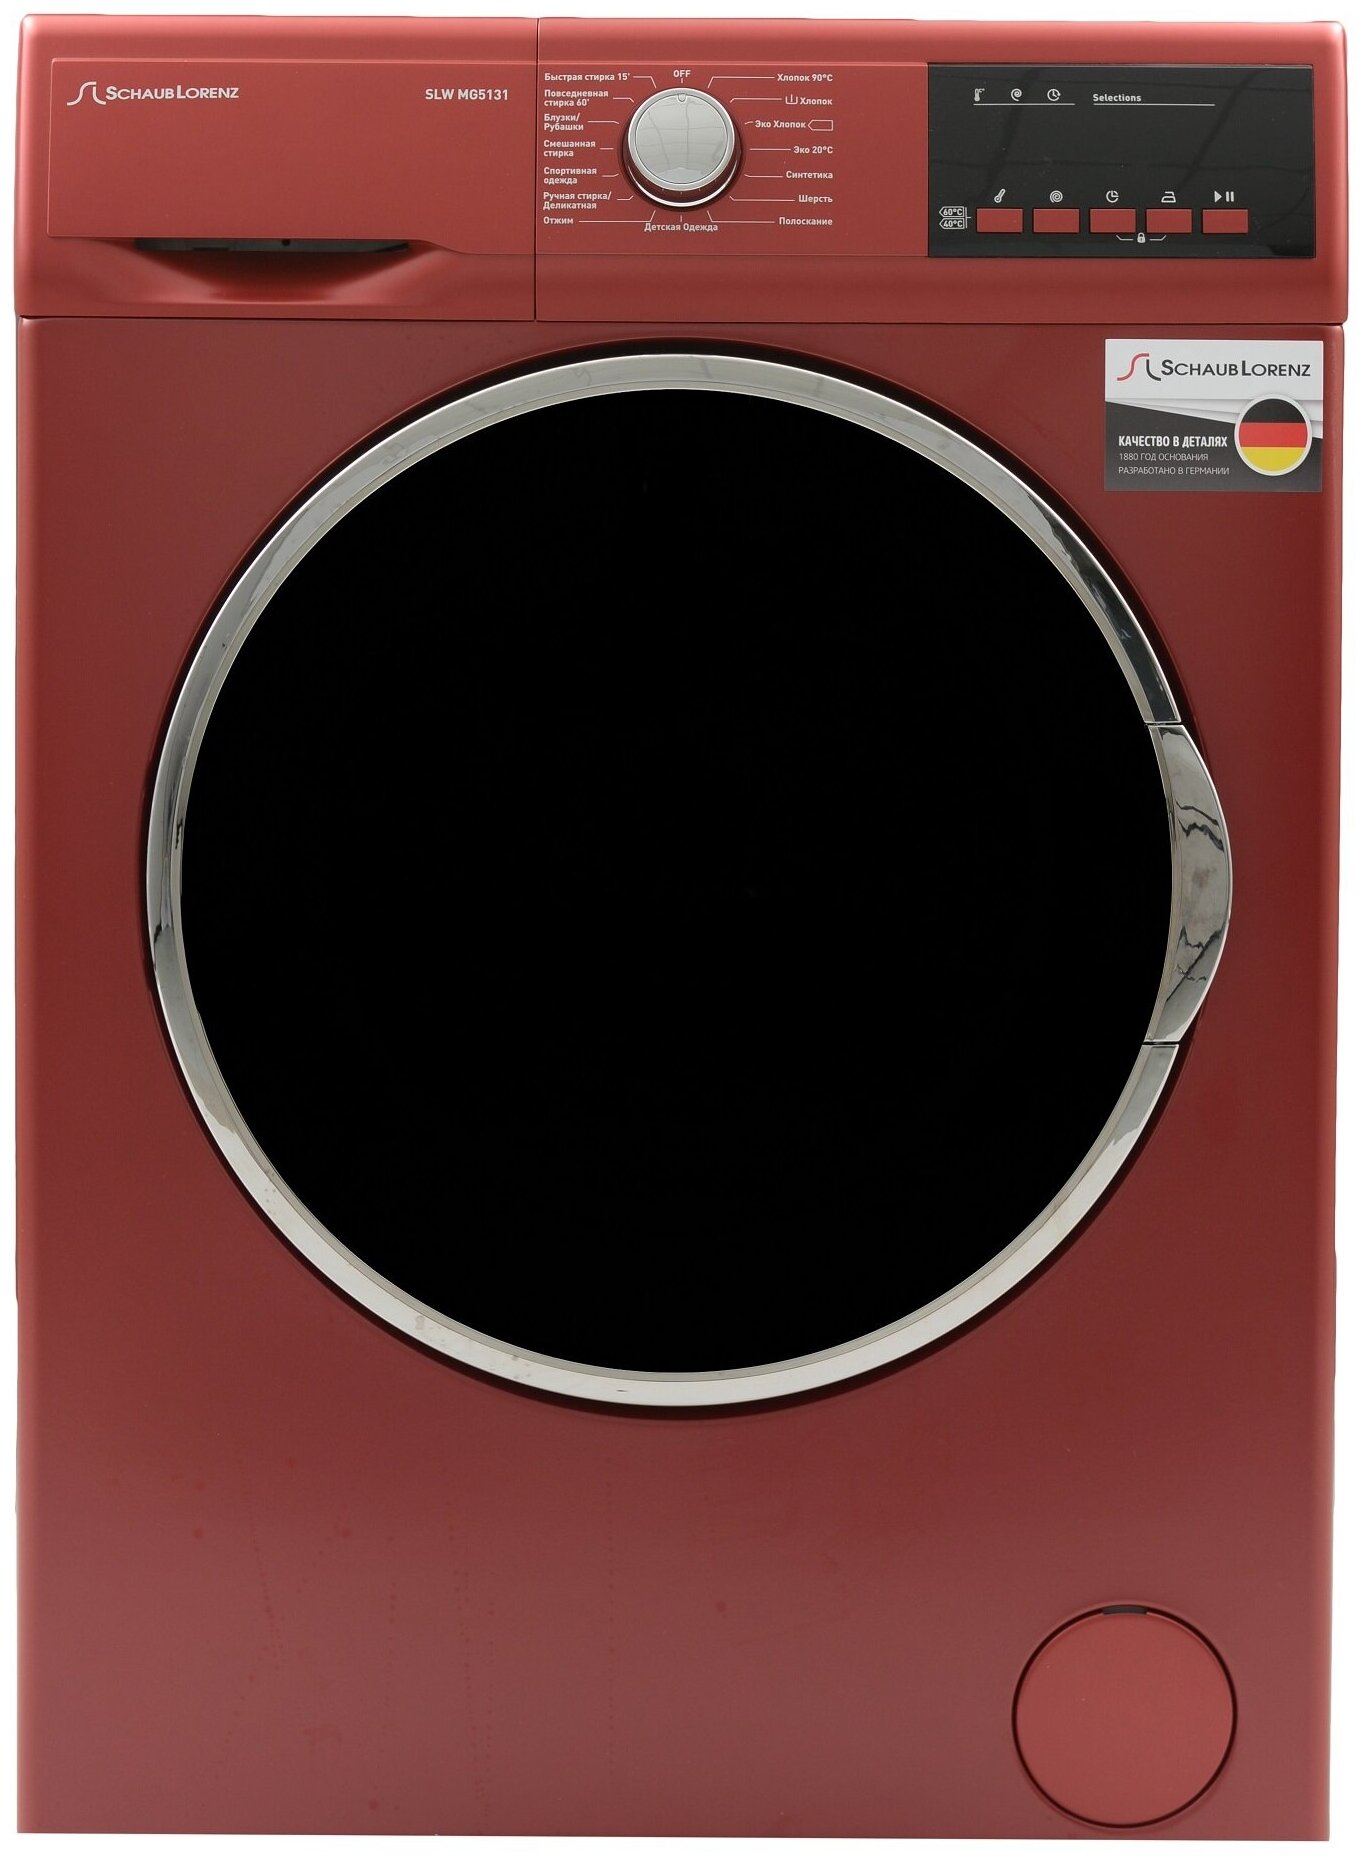 Узкая стиральная машина, 84.5x59.7x41.6 см, загрузка фронтальная, 6кг, до 1200 об/мин при отжиме, A++, LED дисплей, красная - фотография № 1